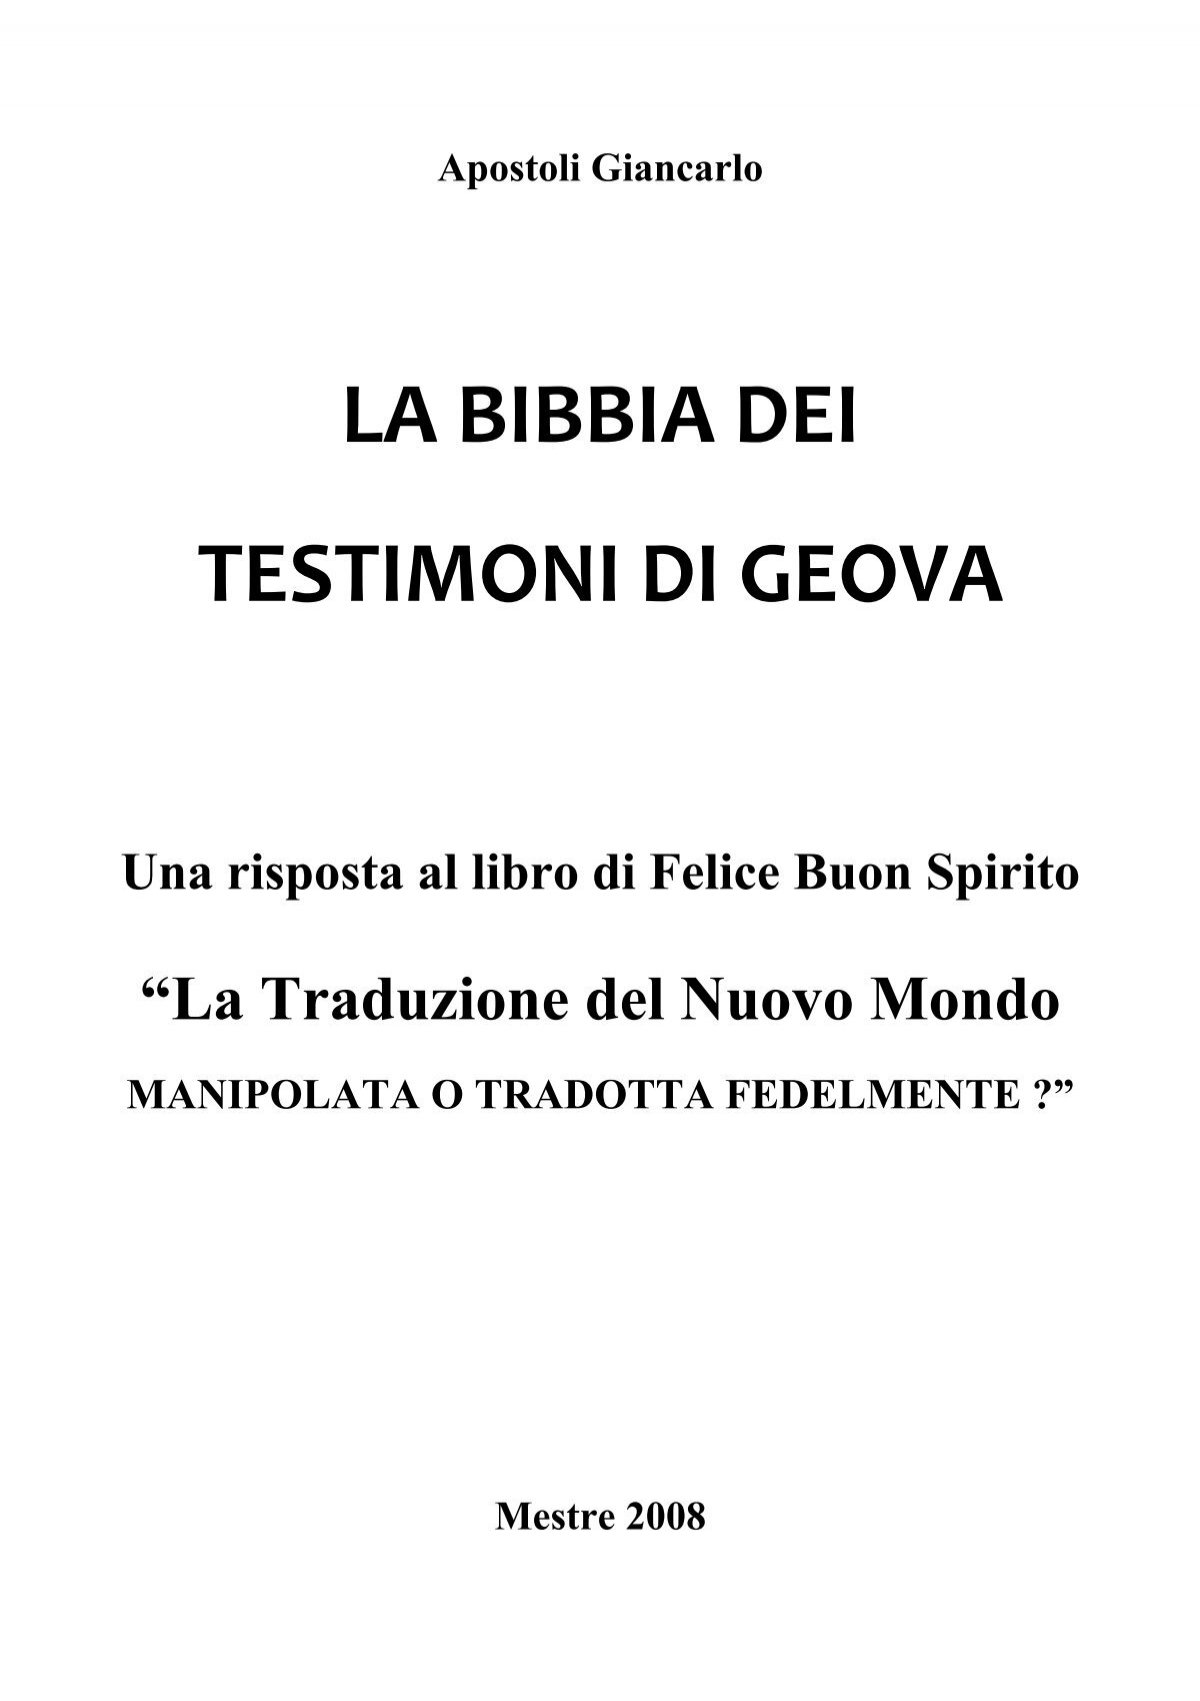 Download Pdf La Bibbia Dei Testimoni Di Geova Infotdgeova It